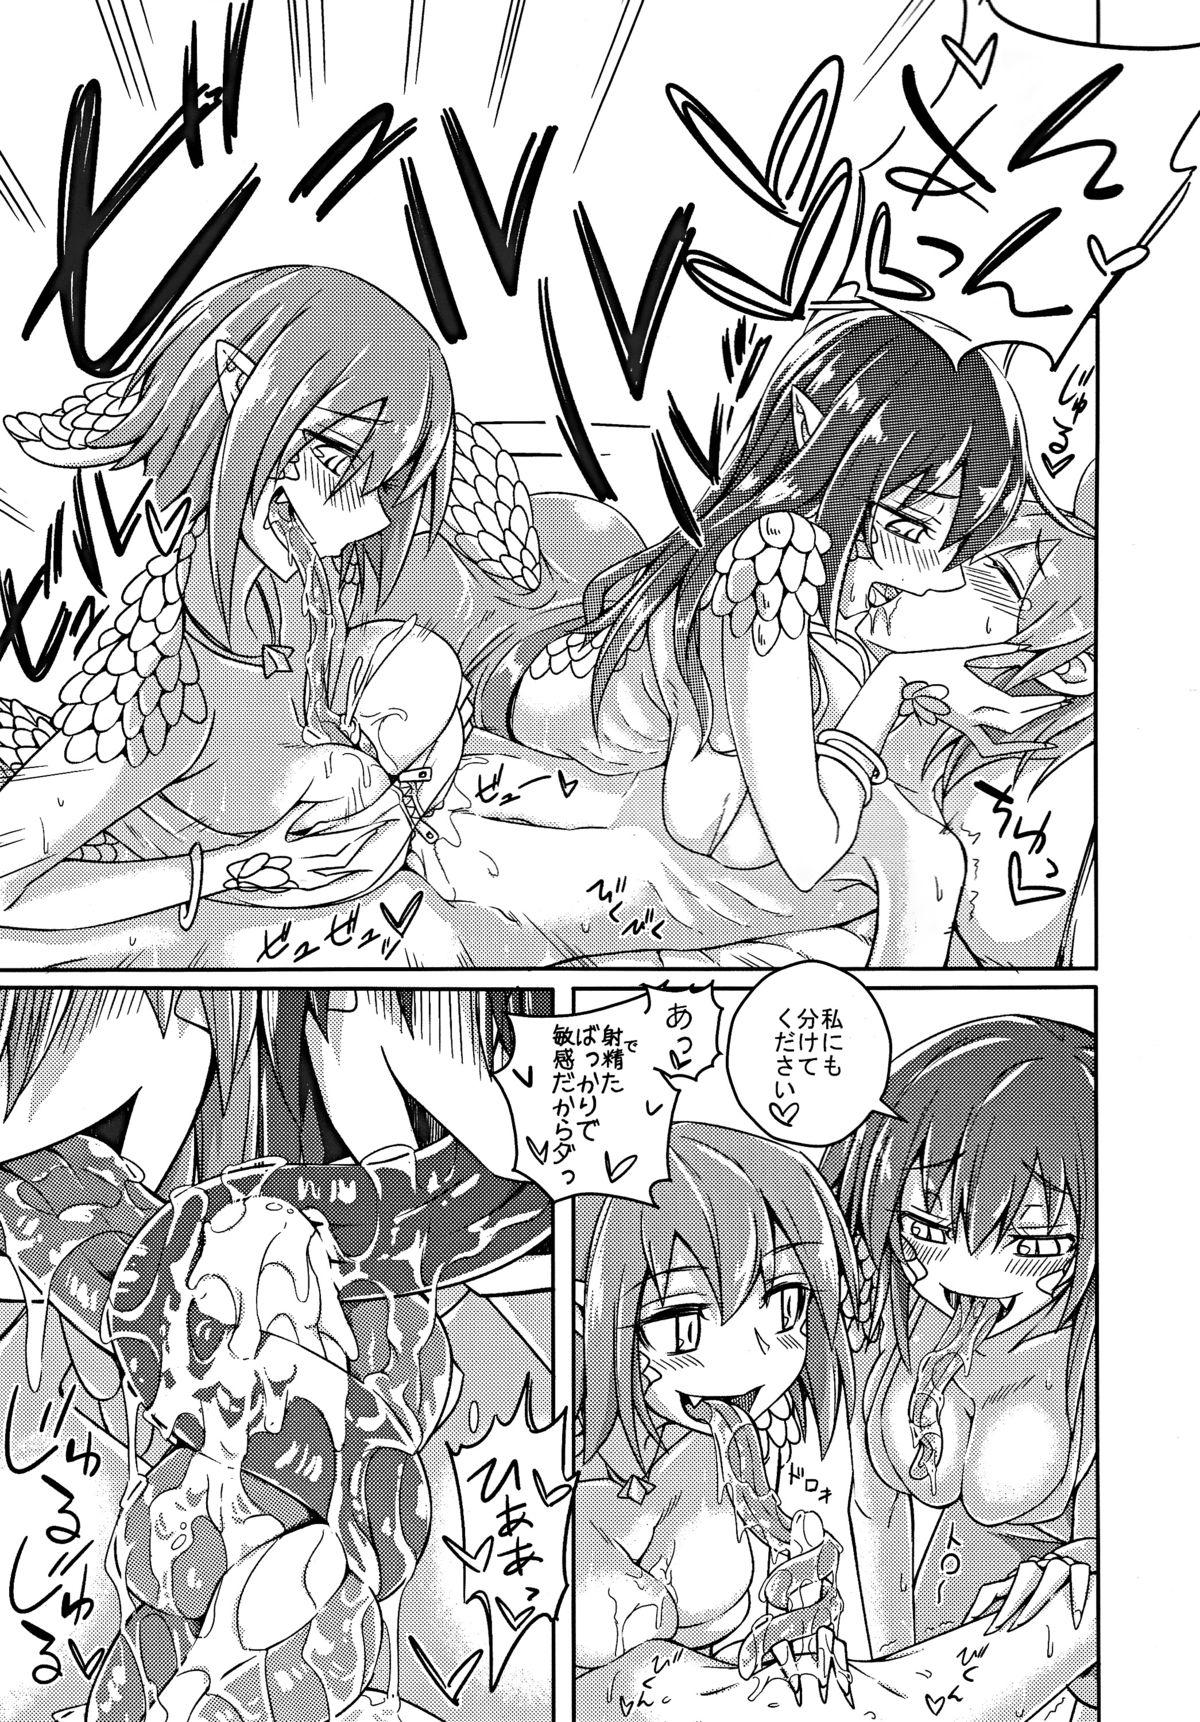 Muscles Watashi no Koibito o Shoukai Shimasu! EX5 - Monster girl quest  - Page 9